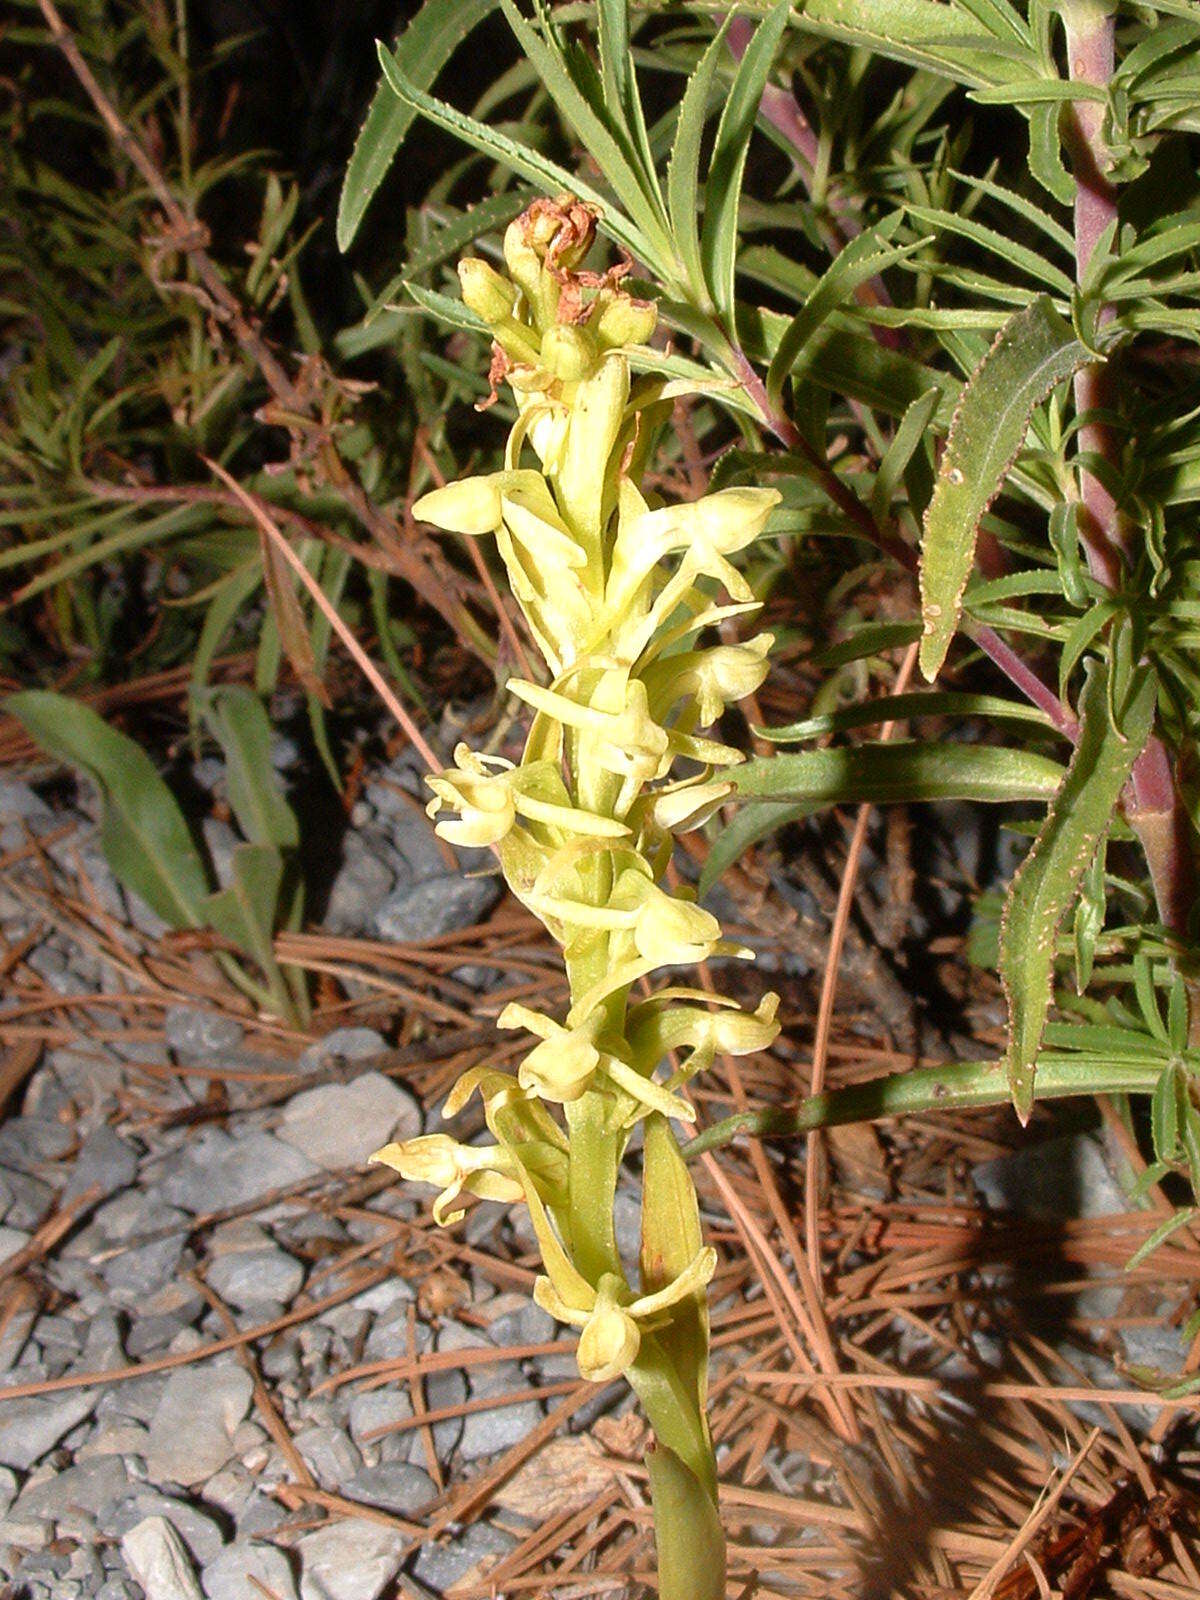 Image of Shortflowered bog orchid